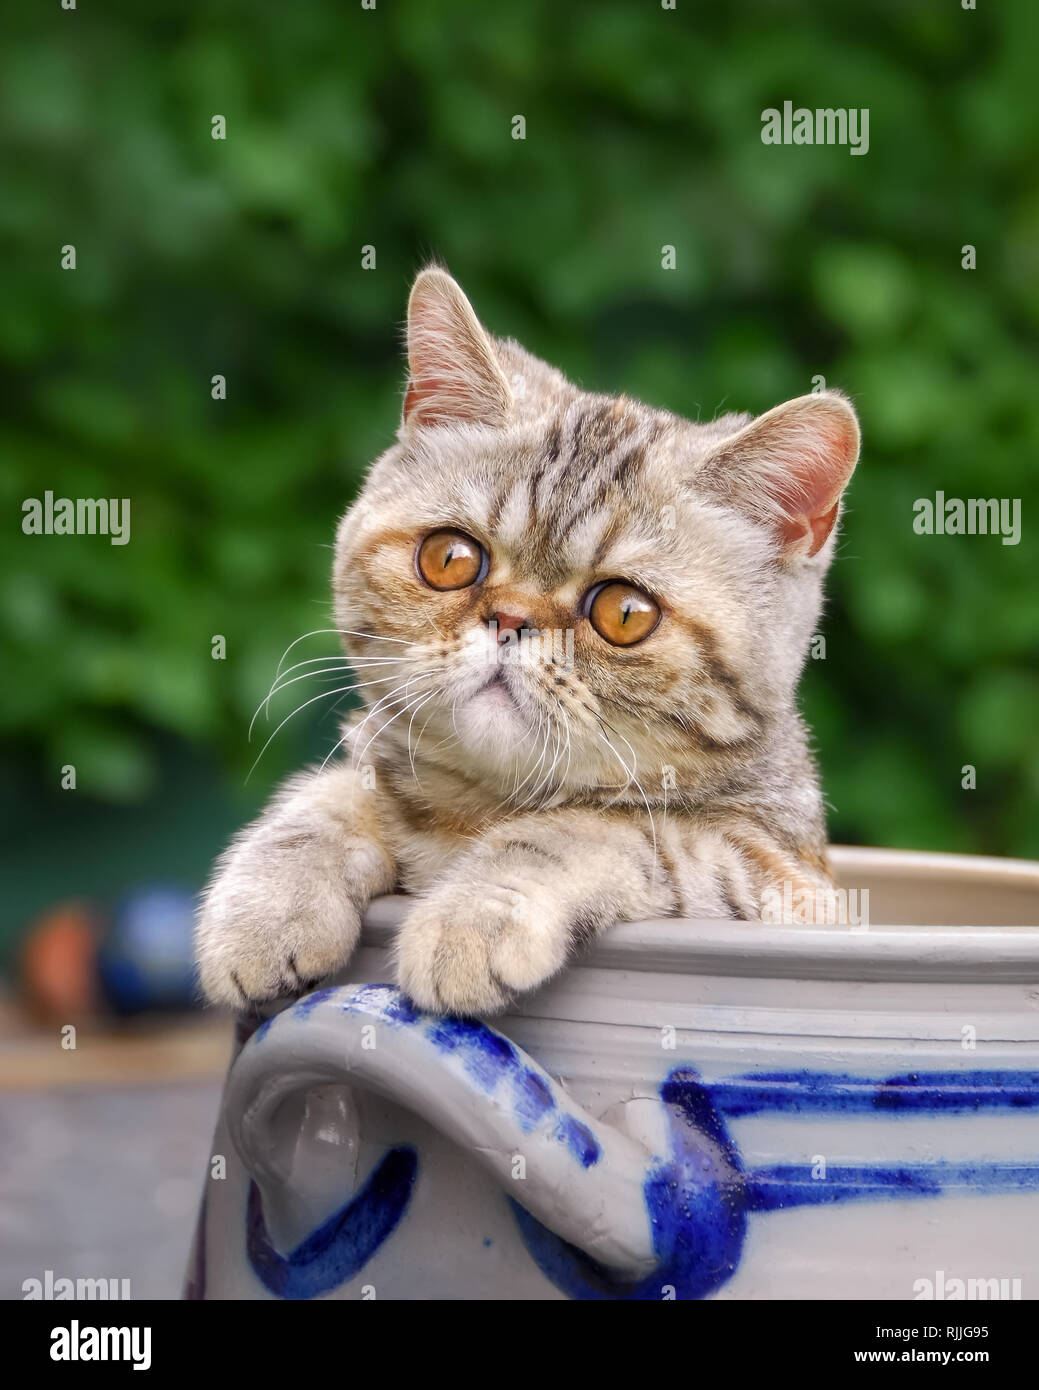 Junge Exotic Shorthair Katze Kätzchen, eine kurzhaarige persischen Rasse, in einem Steingut Topf zeigt seine Pfoten und neugierig beobachten, im Garten sitzen, Germ Stockfoto